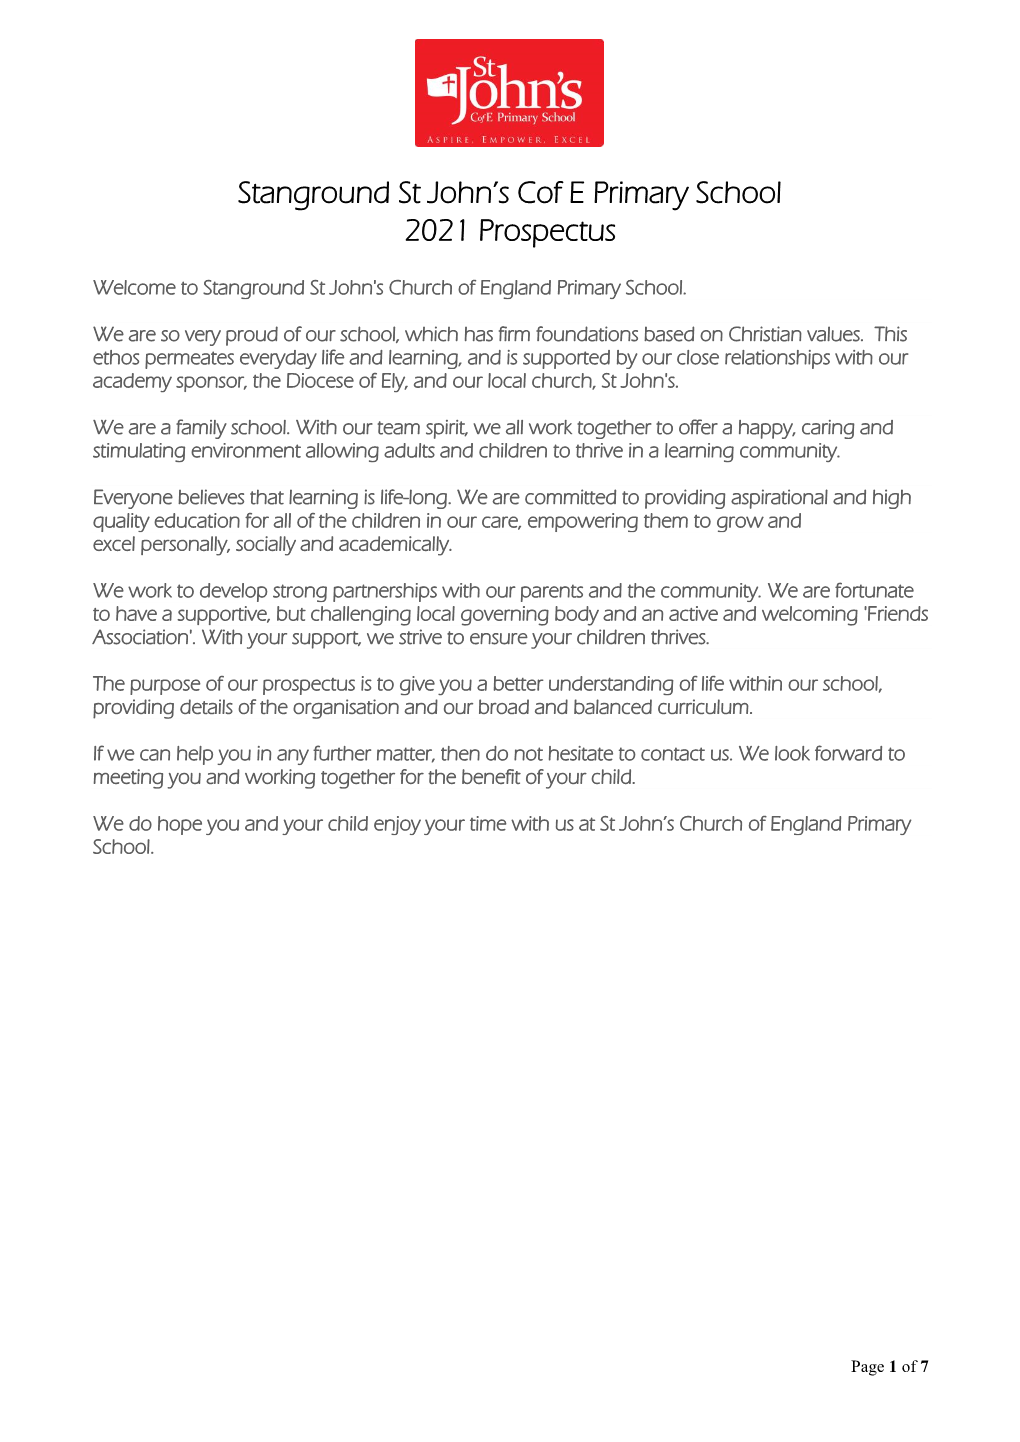 Stanground St John's Cof E Primary School 2021 Prospectus